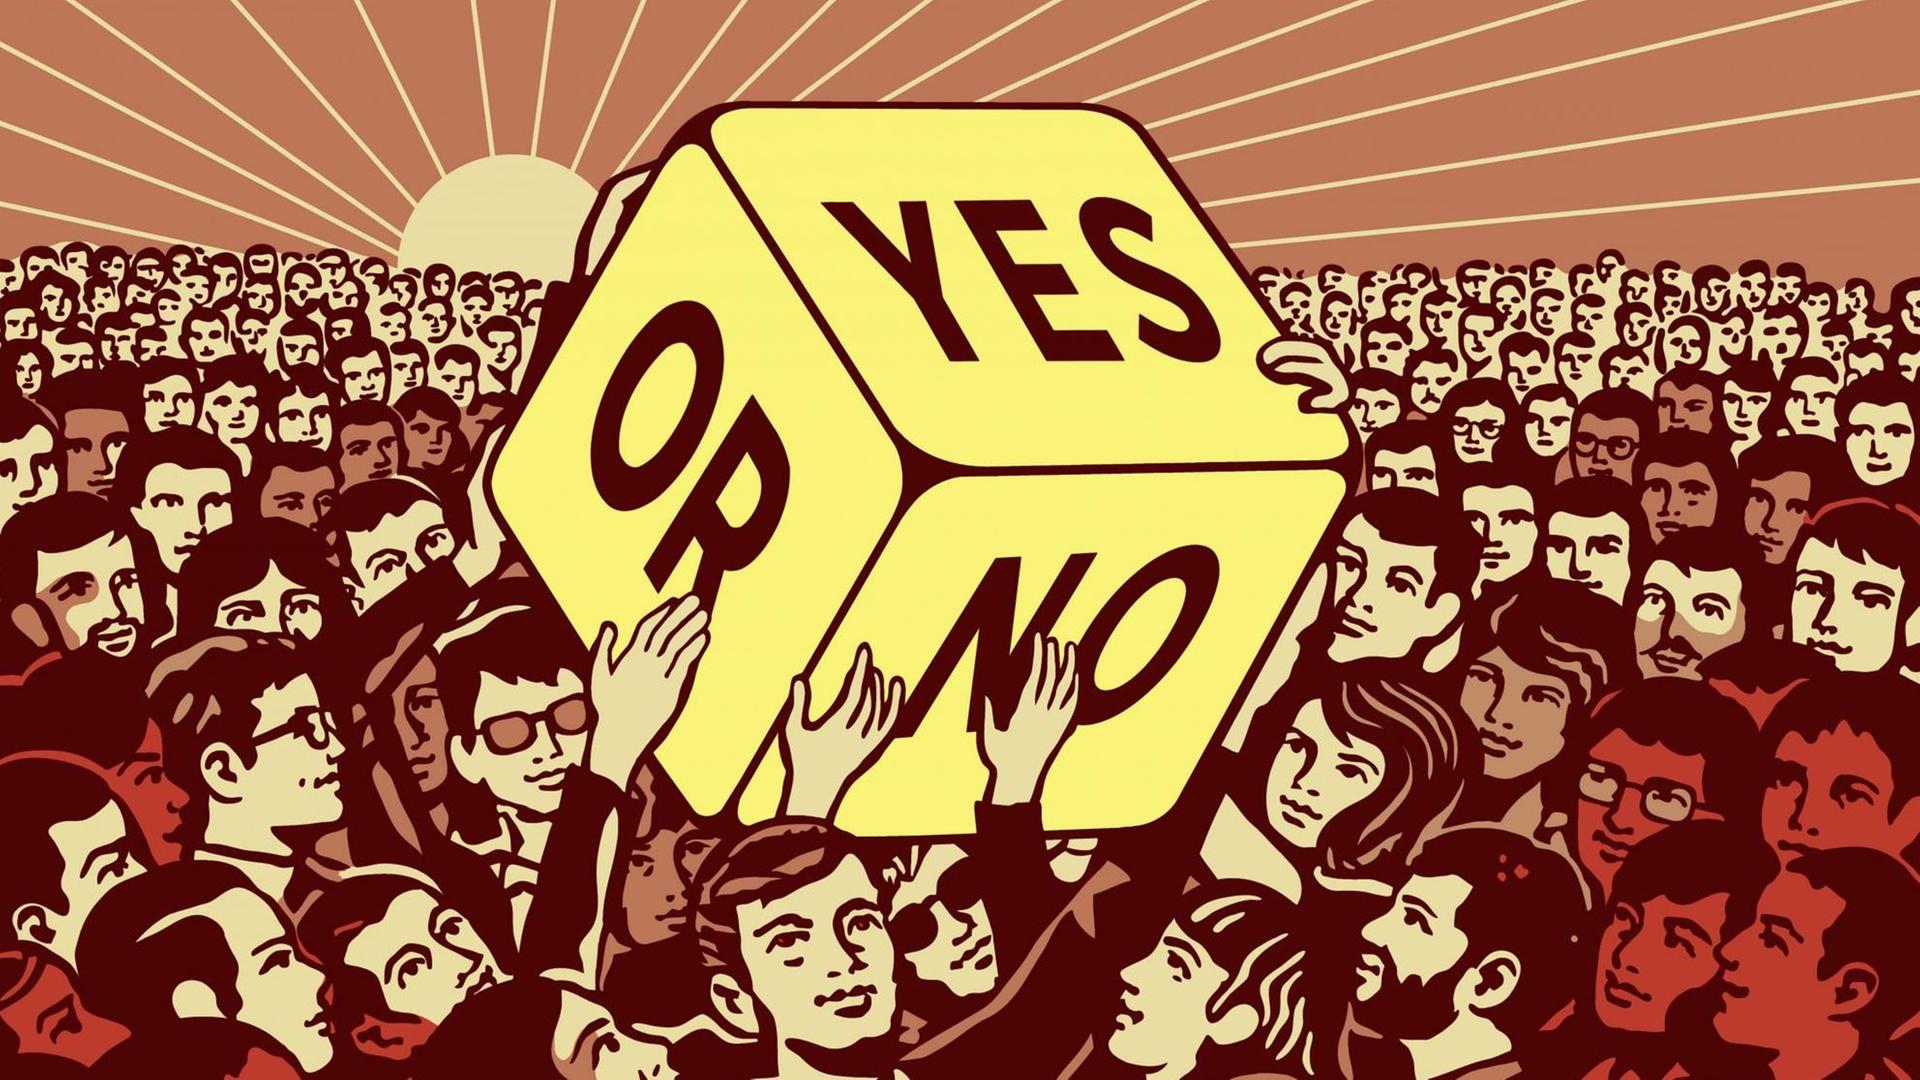 Die Illustration zeigt viele Menschen, die einen Würfel hochhalten, auf dem "Yes" und "No" steht.